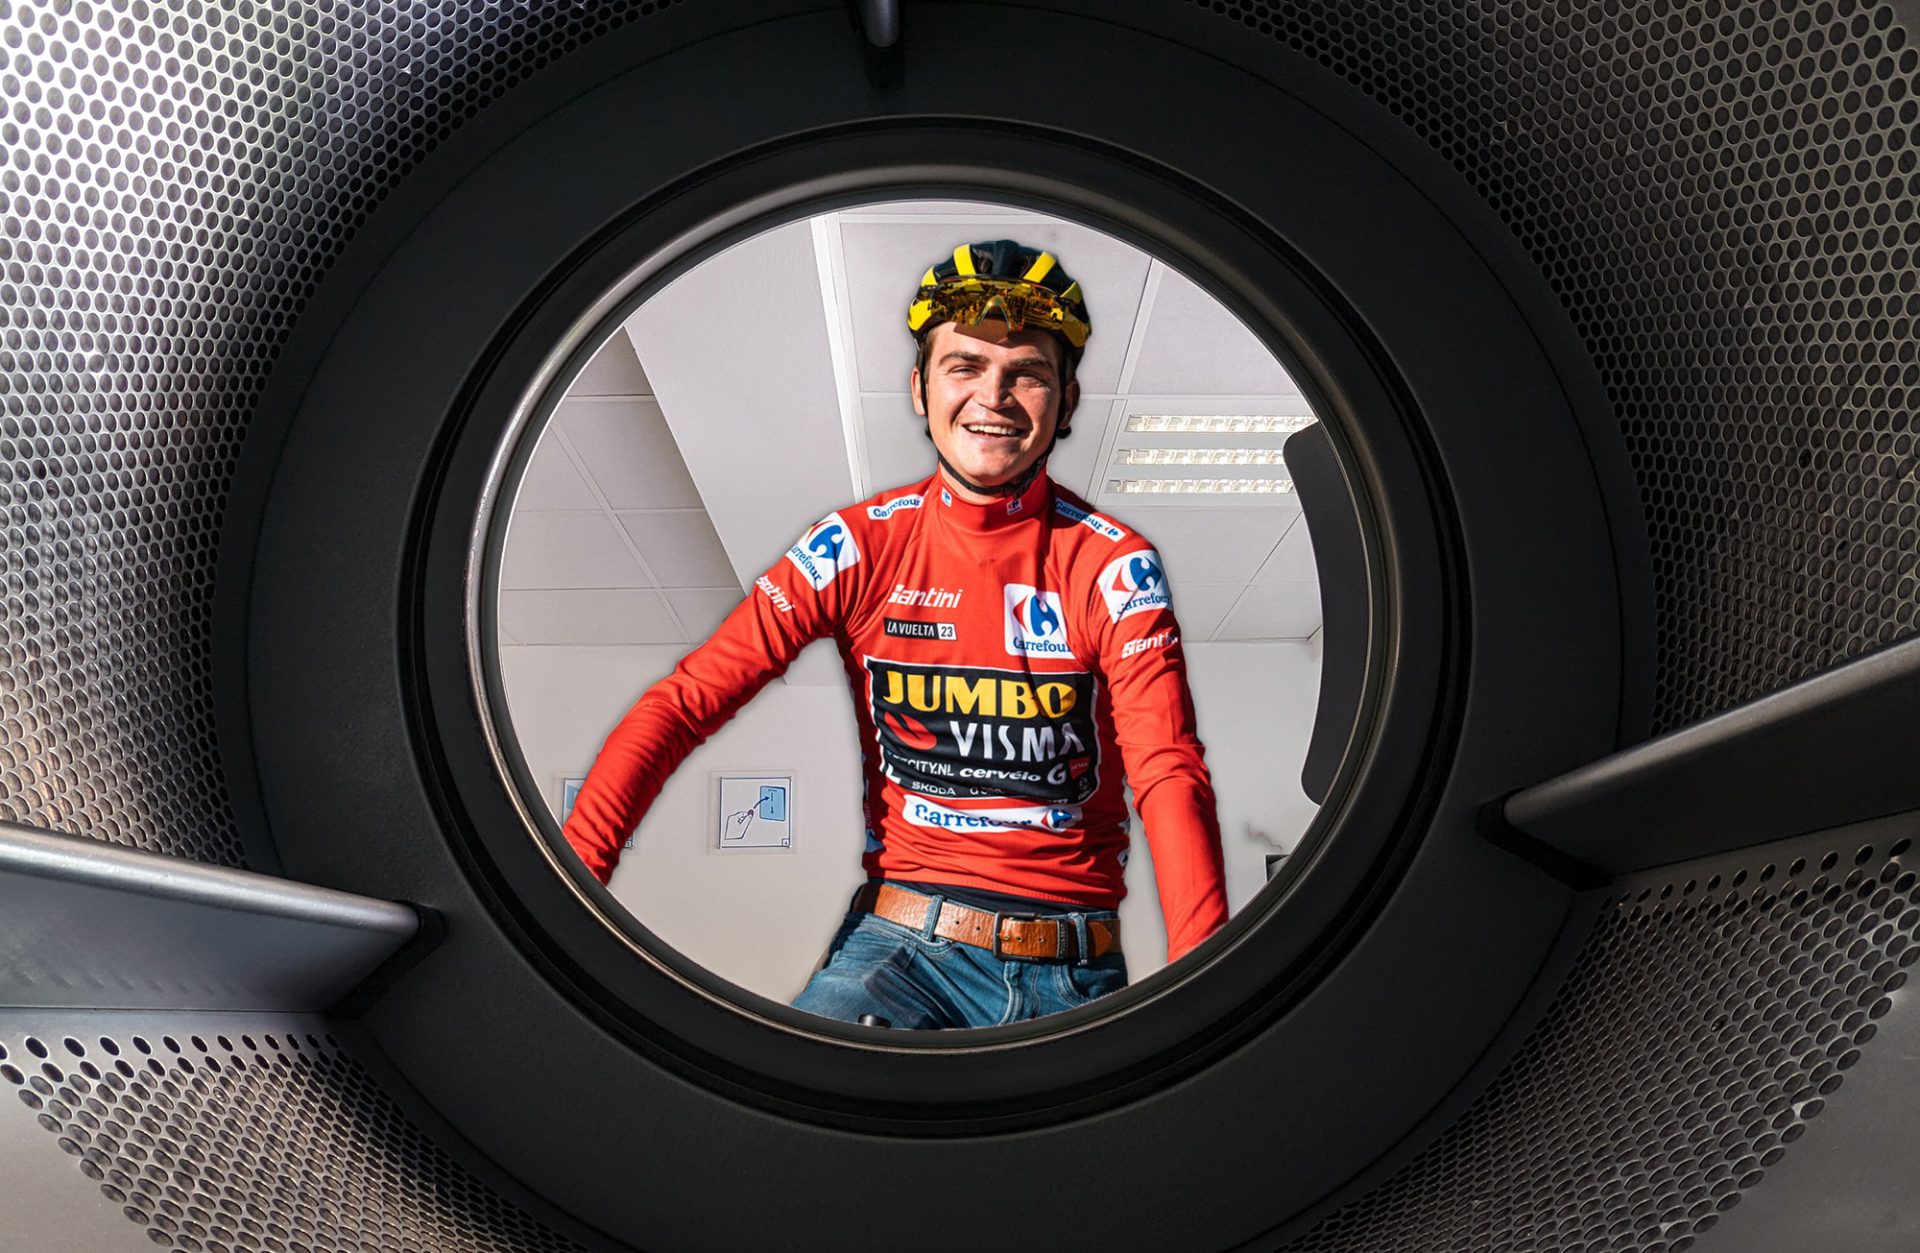 Sepp Kuss inside a washing machine drum.